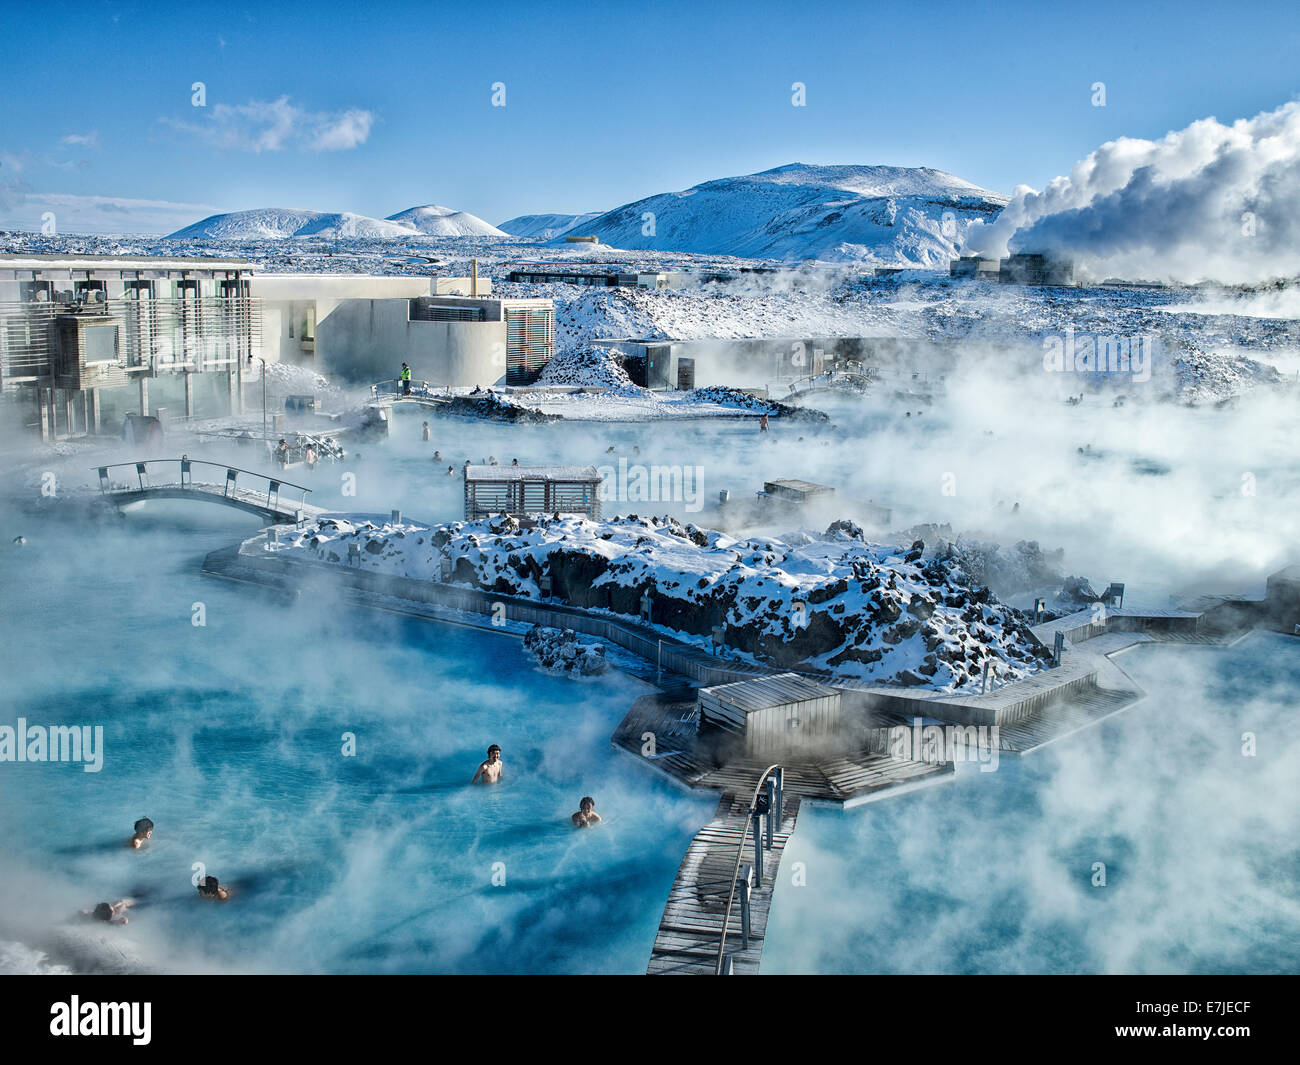 Blue lagoon, Blue, Polar sea, Grindavik, Gruindavik, island, Iceland, Europe, Lagun, Northern Europe, Reykjavik, thermal bath, T Stock Photo